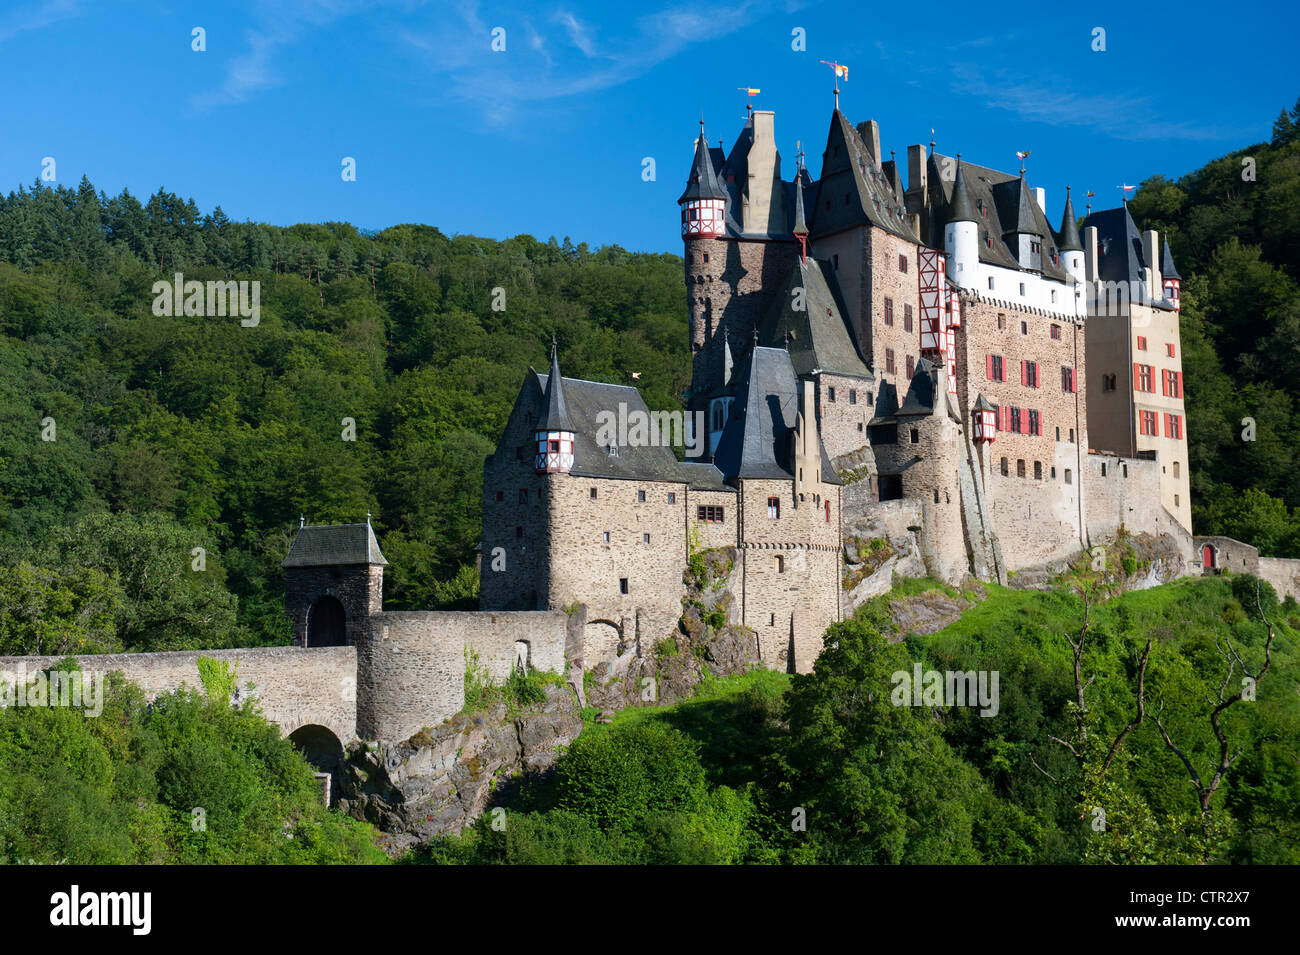 Le château de Burg Eltz près de vallée de la Moselle en Allemagne Banque D'Images